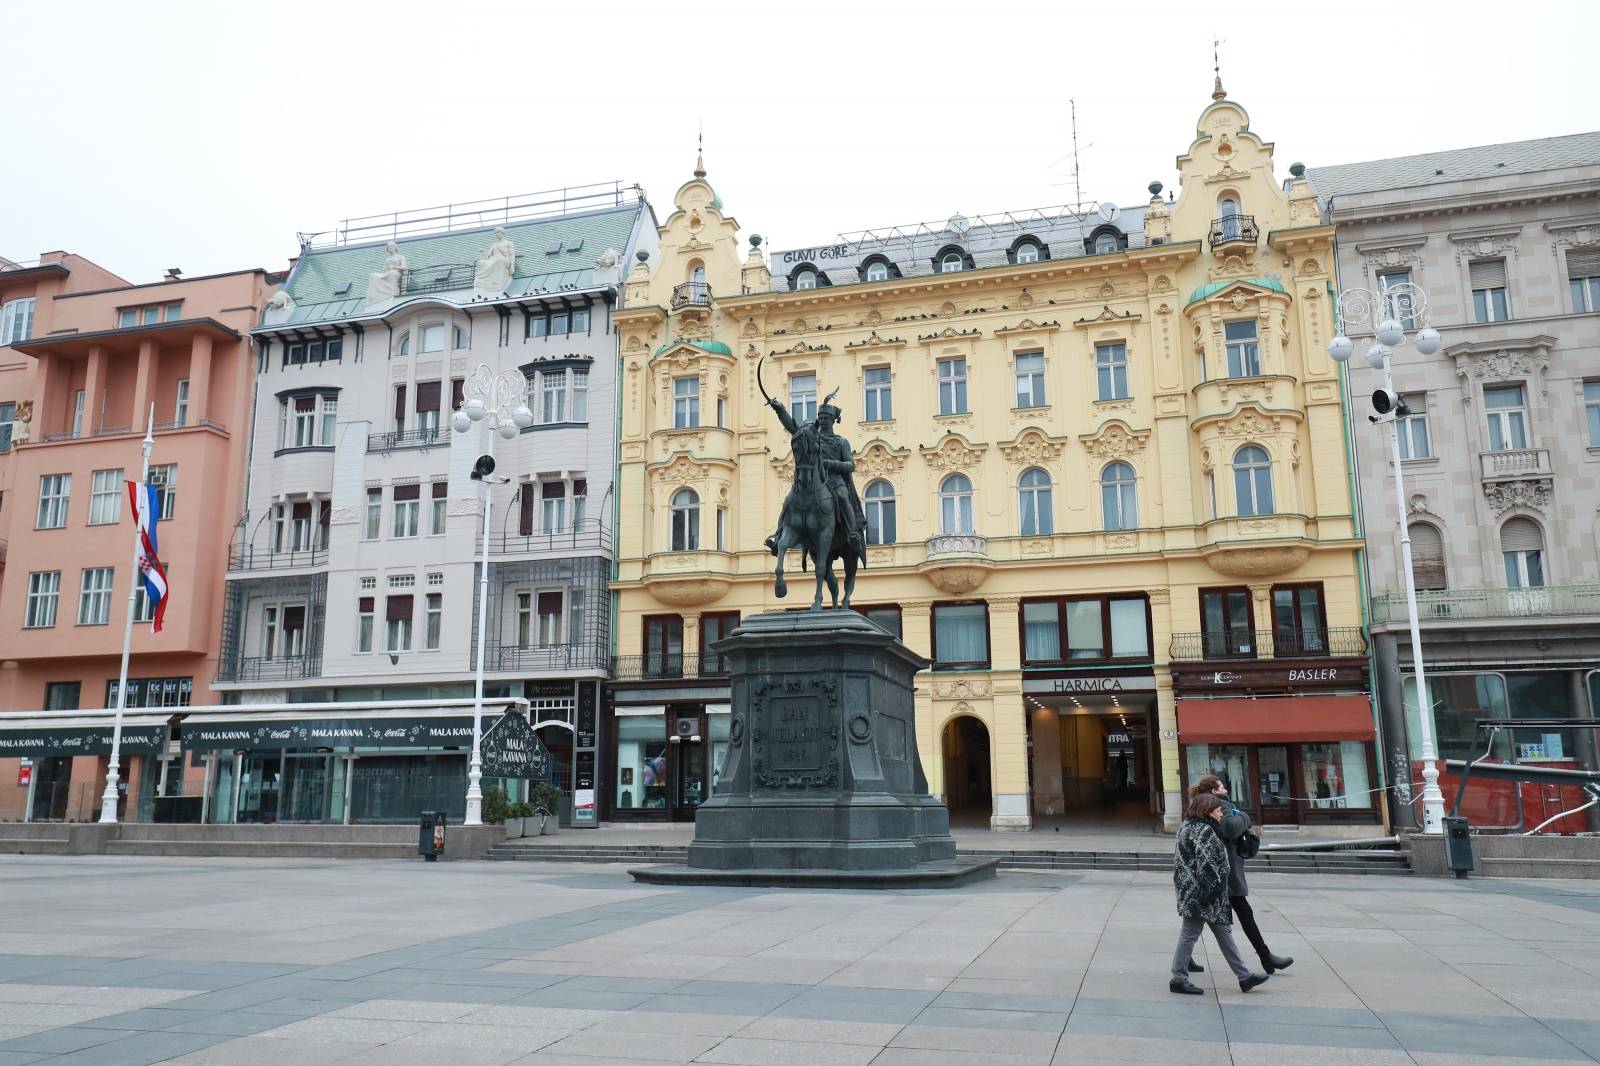 Zagreb: Na pročelju zgrade na glavnom gradskom trgu osvanu natpis "Glavu gore"